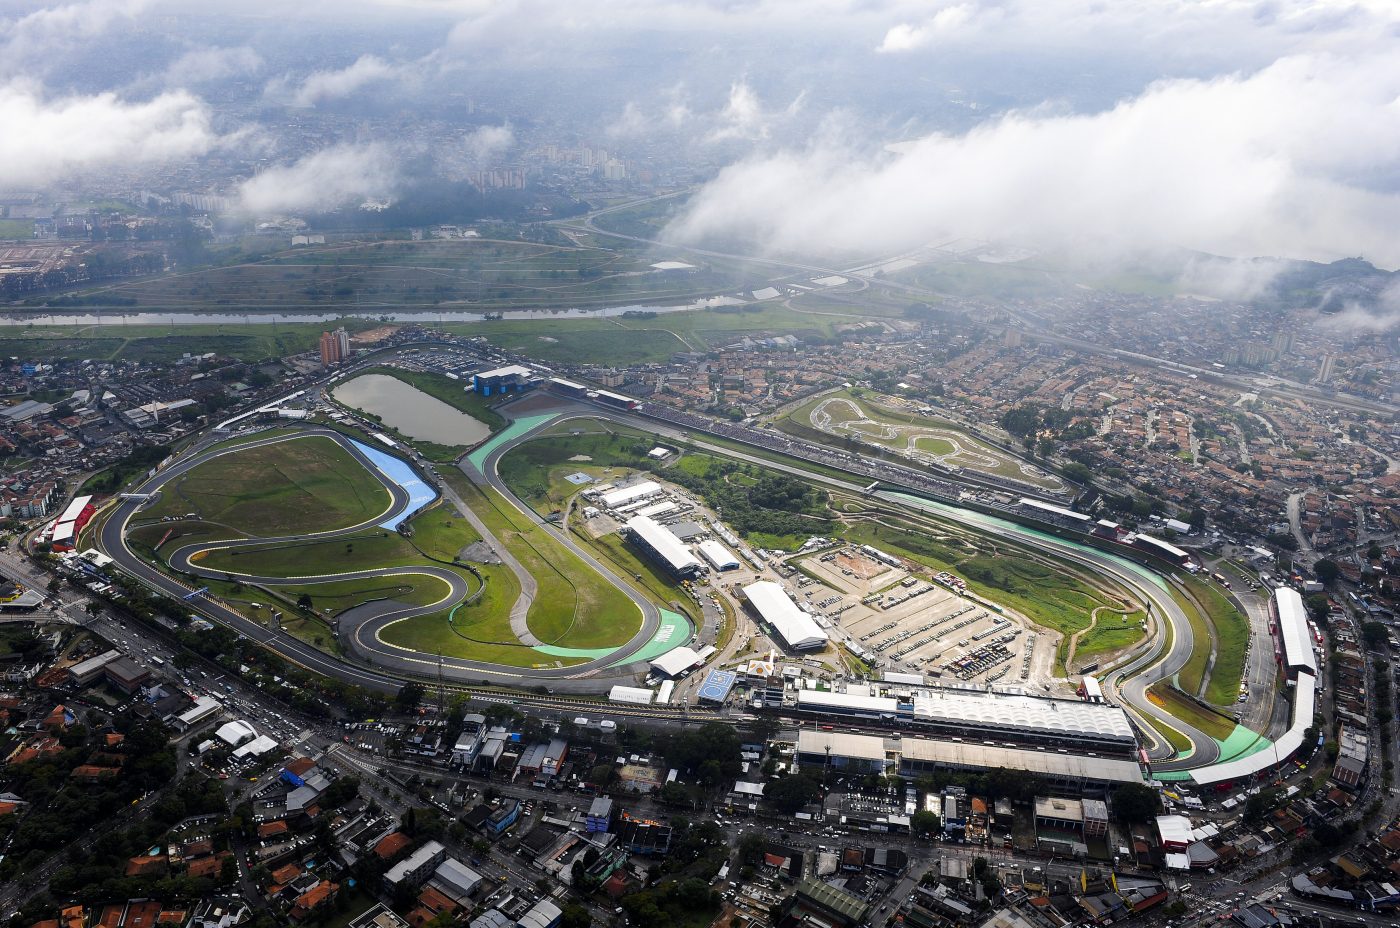 Brazilian Grand Prix | Interlagos Circuit